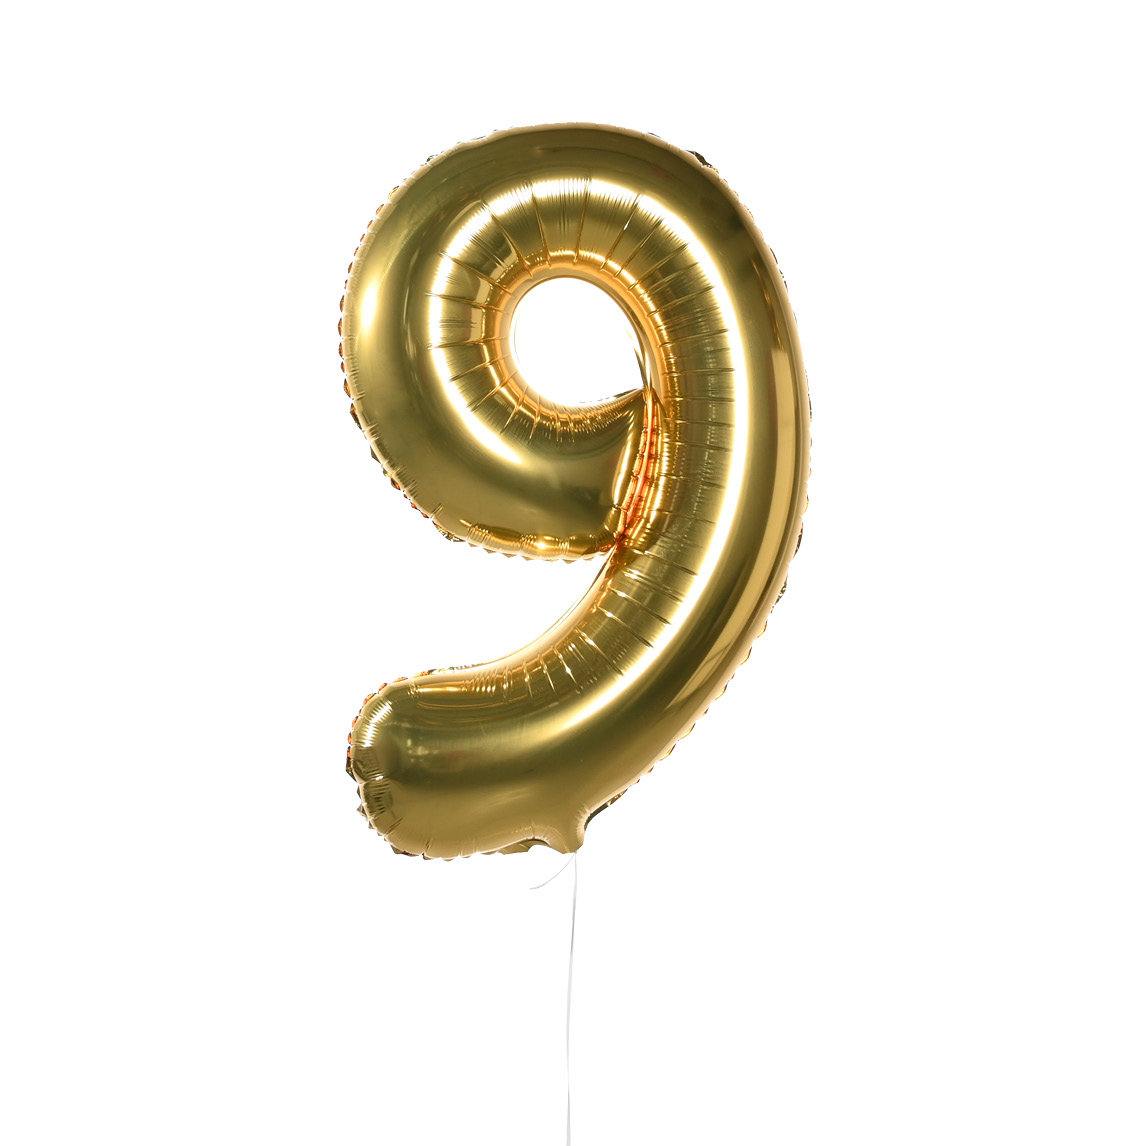 Воздушные шары Цифры (золото) 9 воздушные шары из фольги 16 дюймов 32 дюйма 0 9 цифр 9 цветов шарики для день рождения